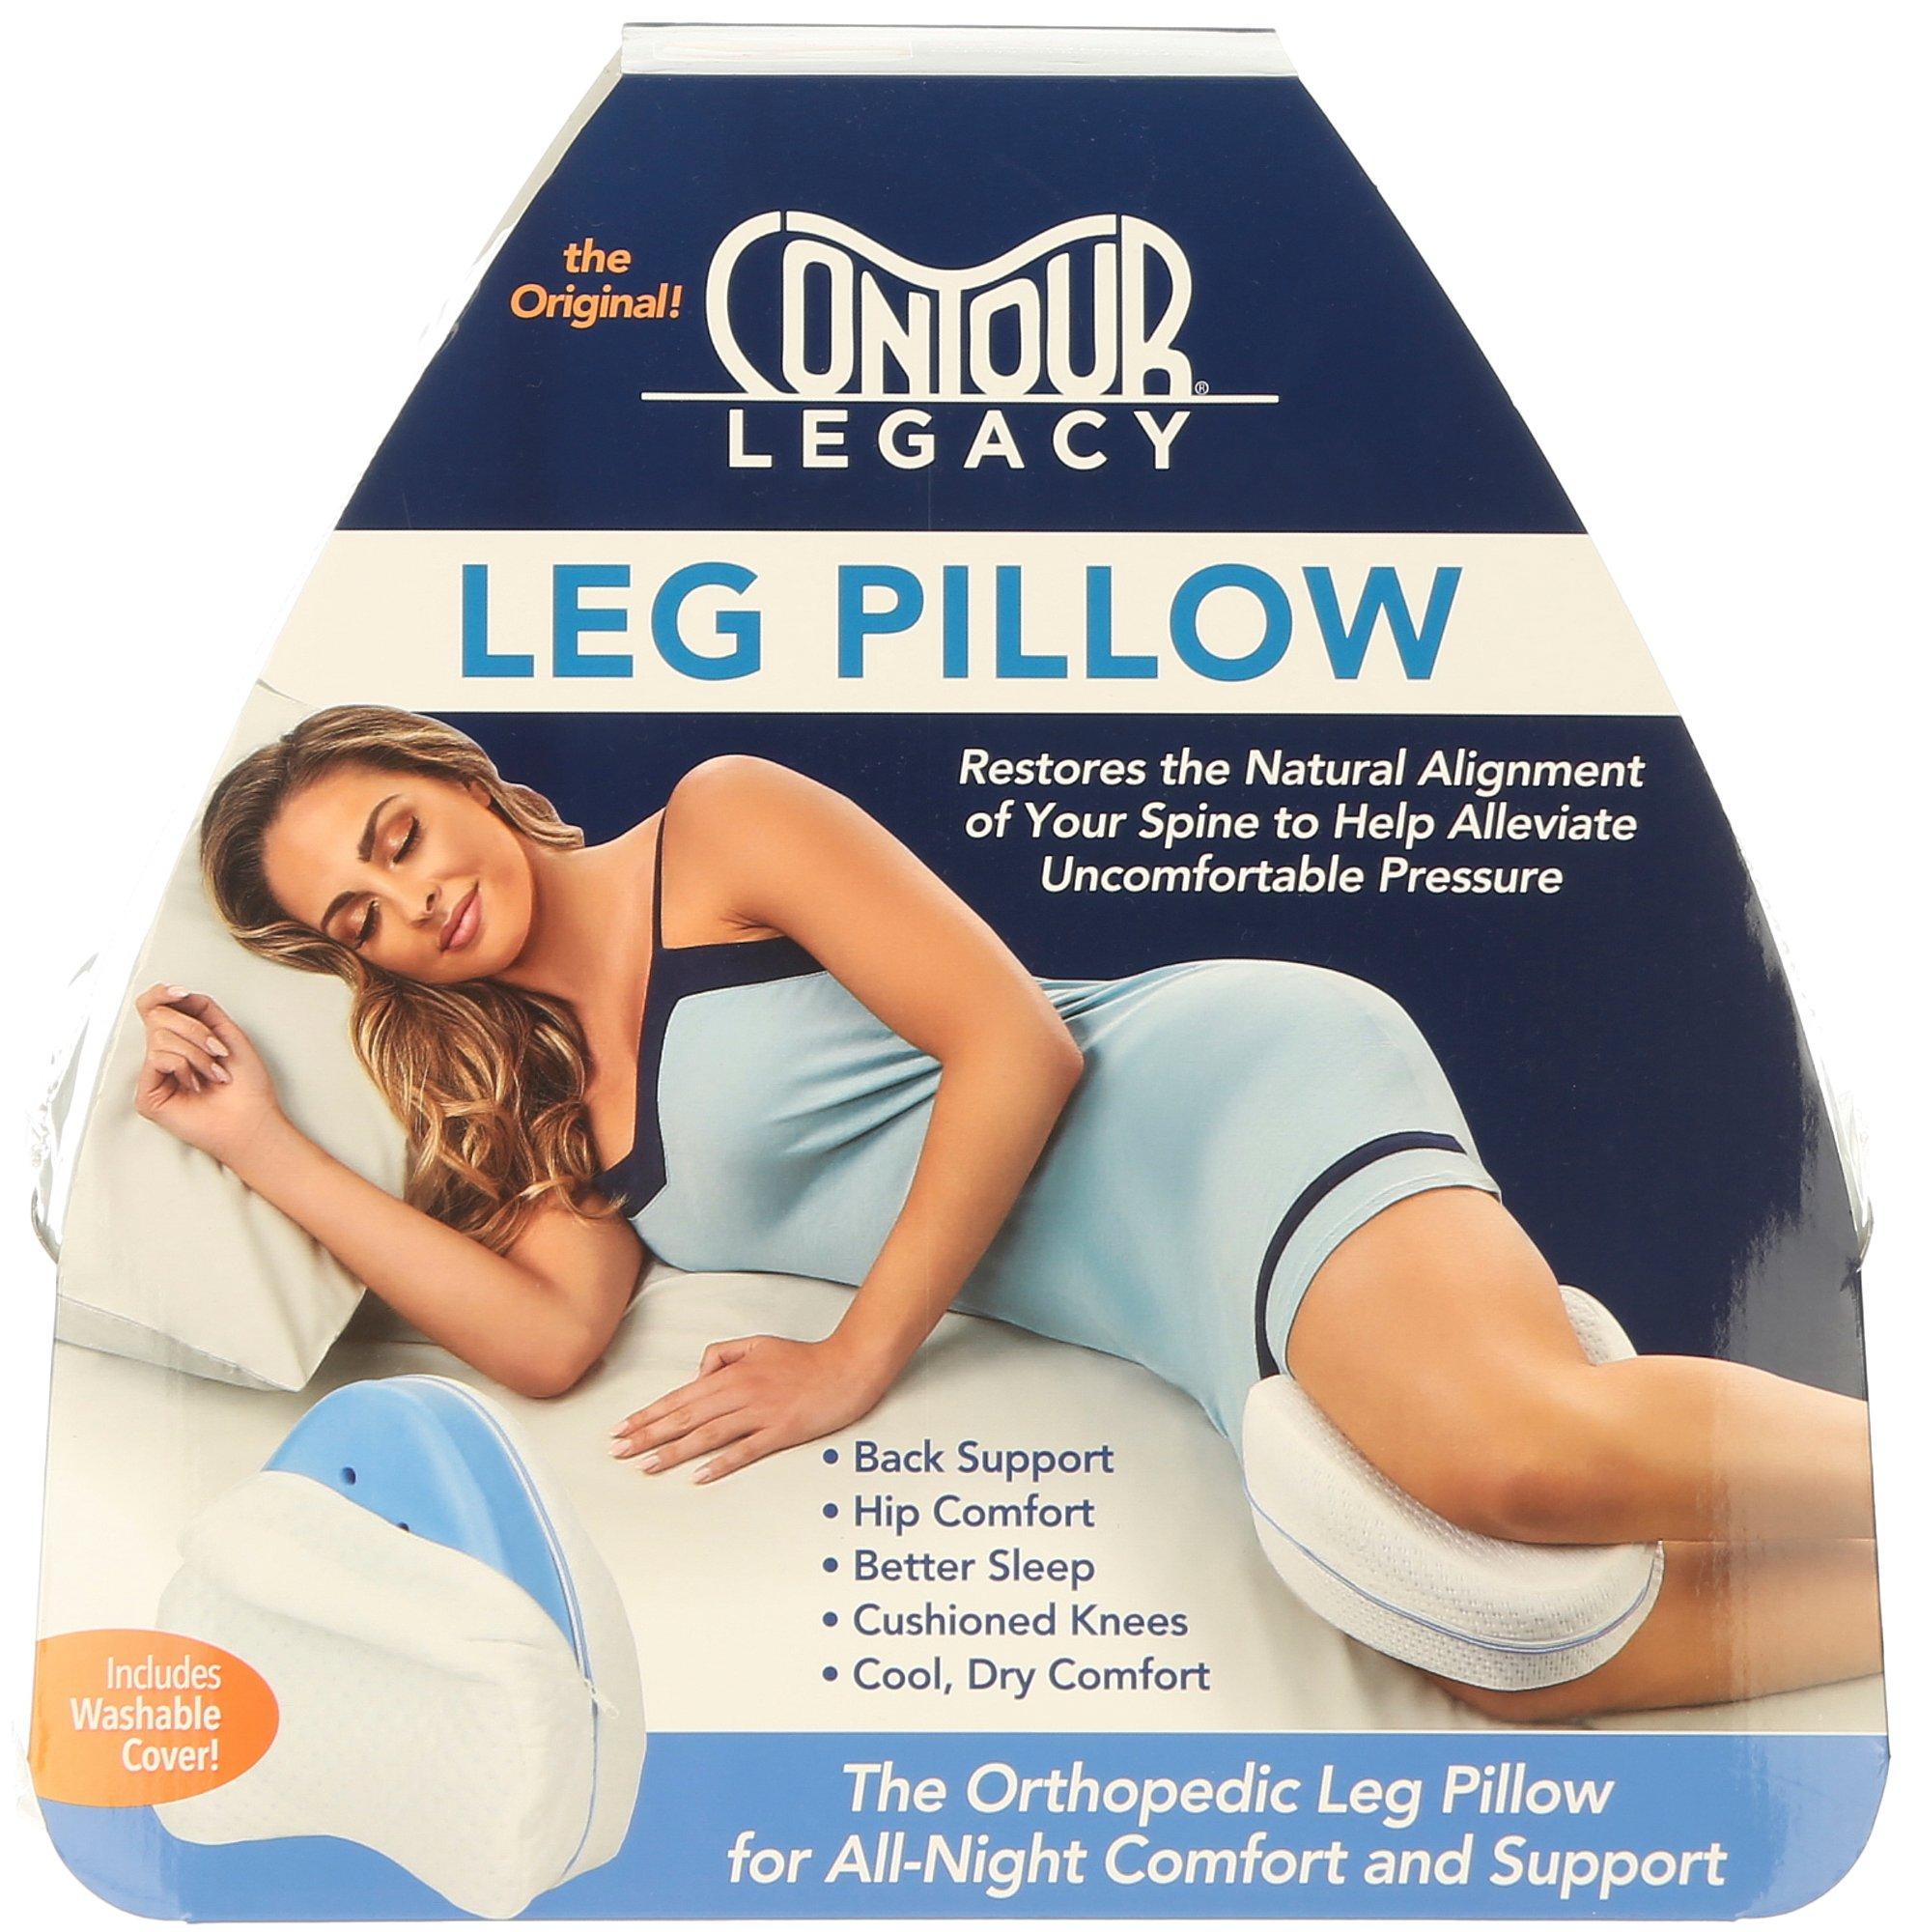 CONTOUR LEGACY Leg Pillow, Search